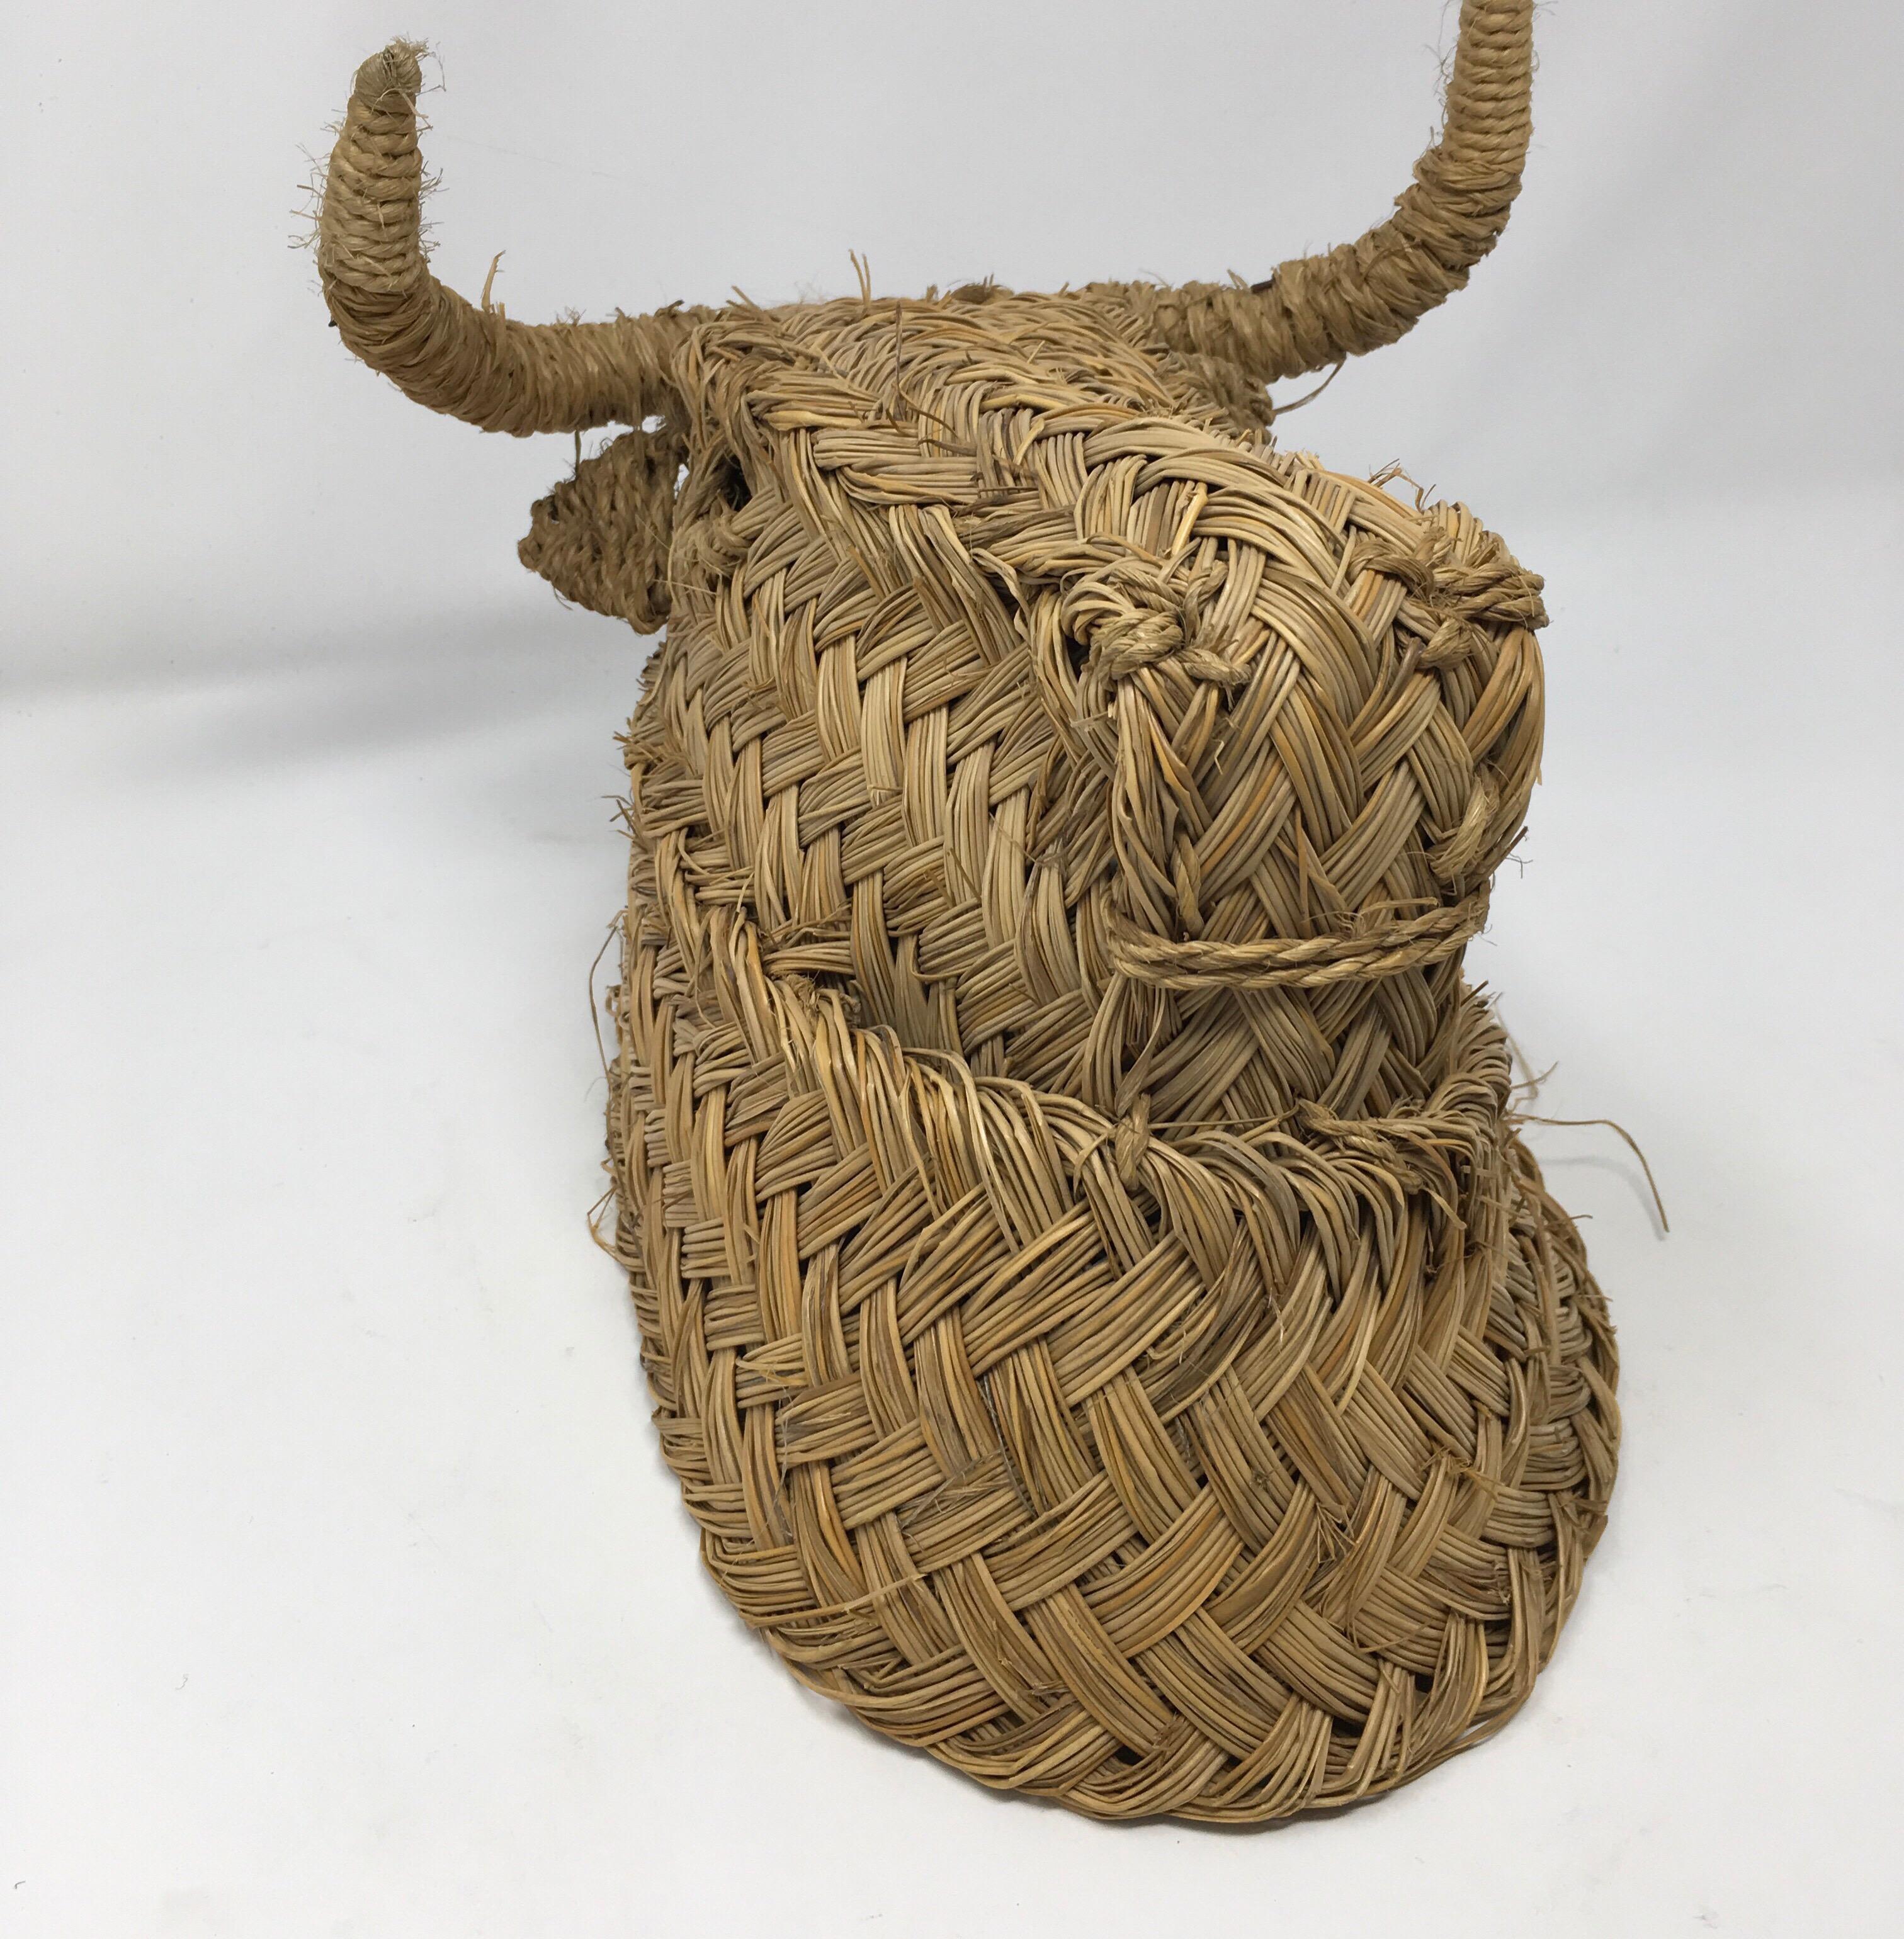 Hand-Woven Handmade Esparto Grass Wall Mount Bulls Head